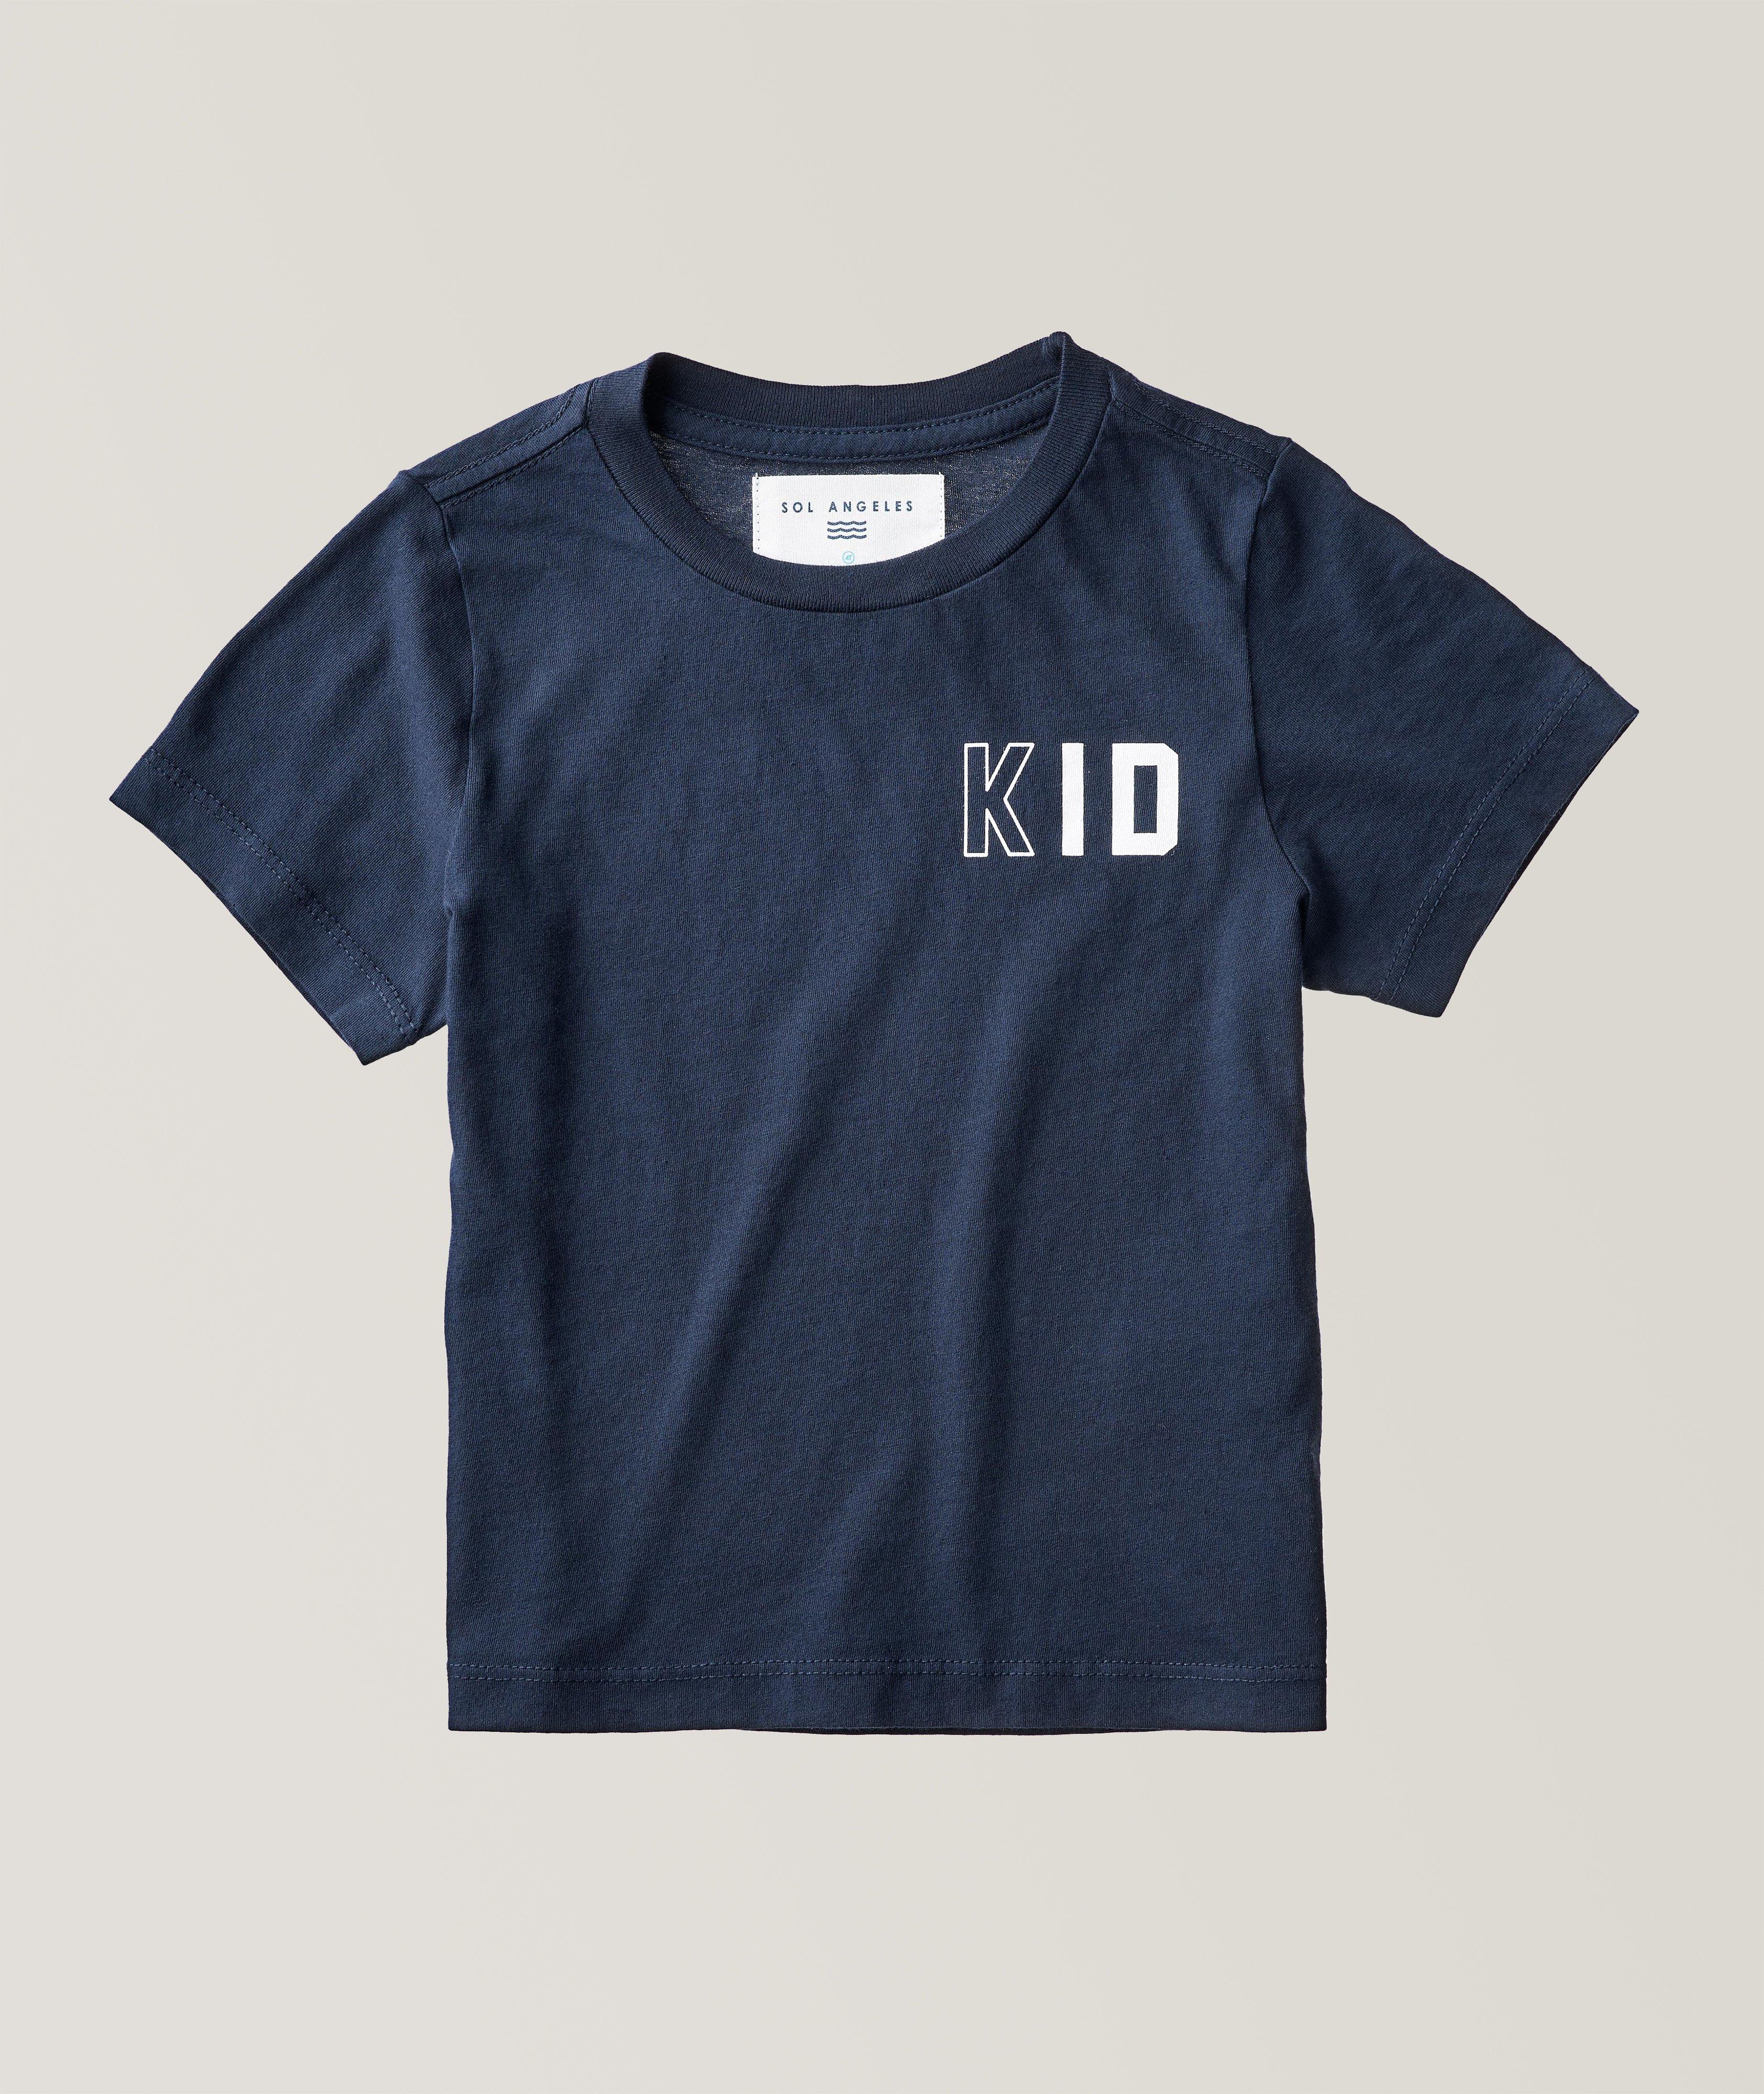 KID Toddler T-Shirt